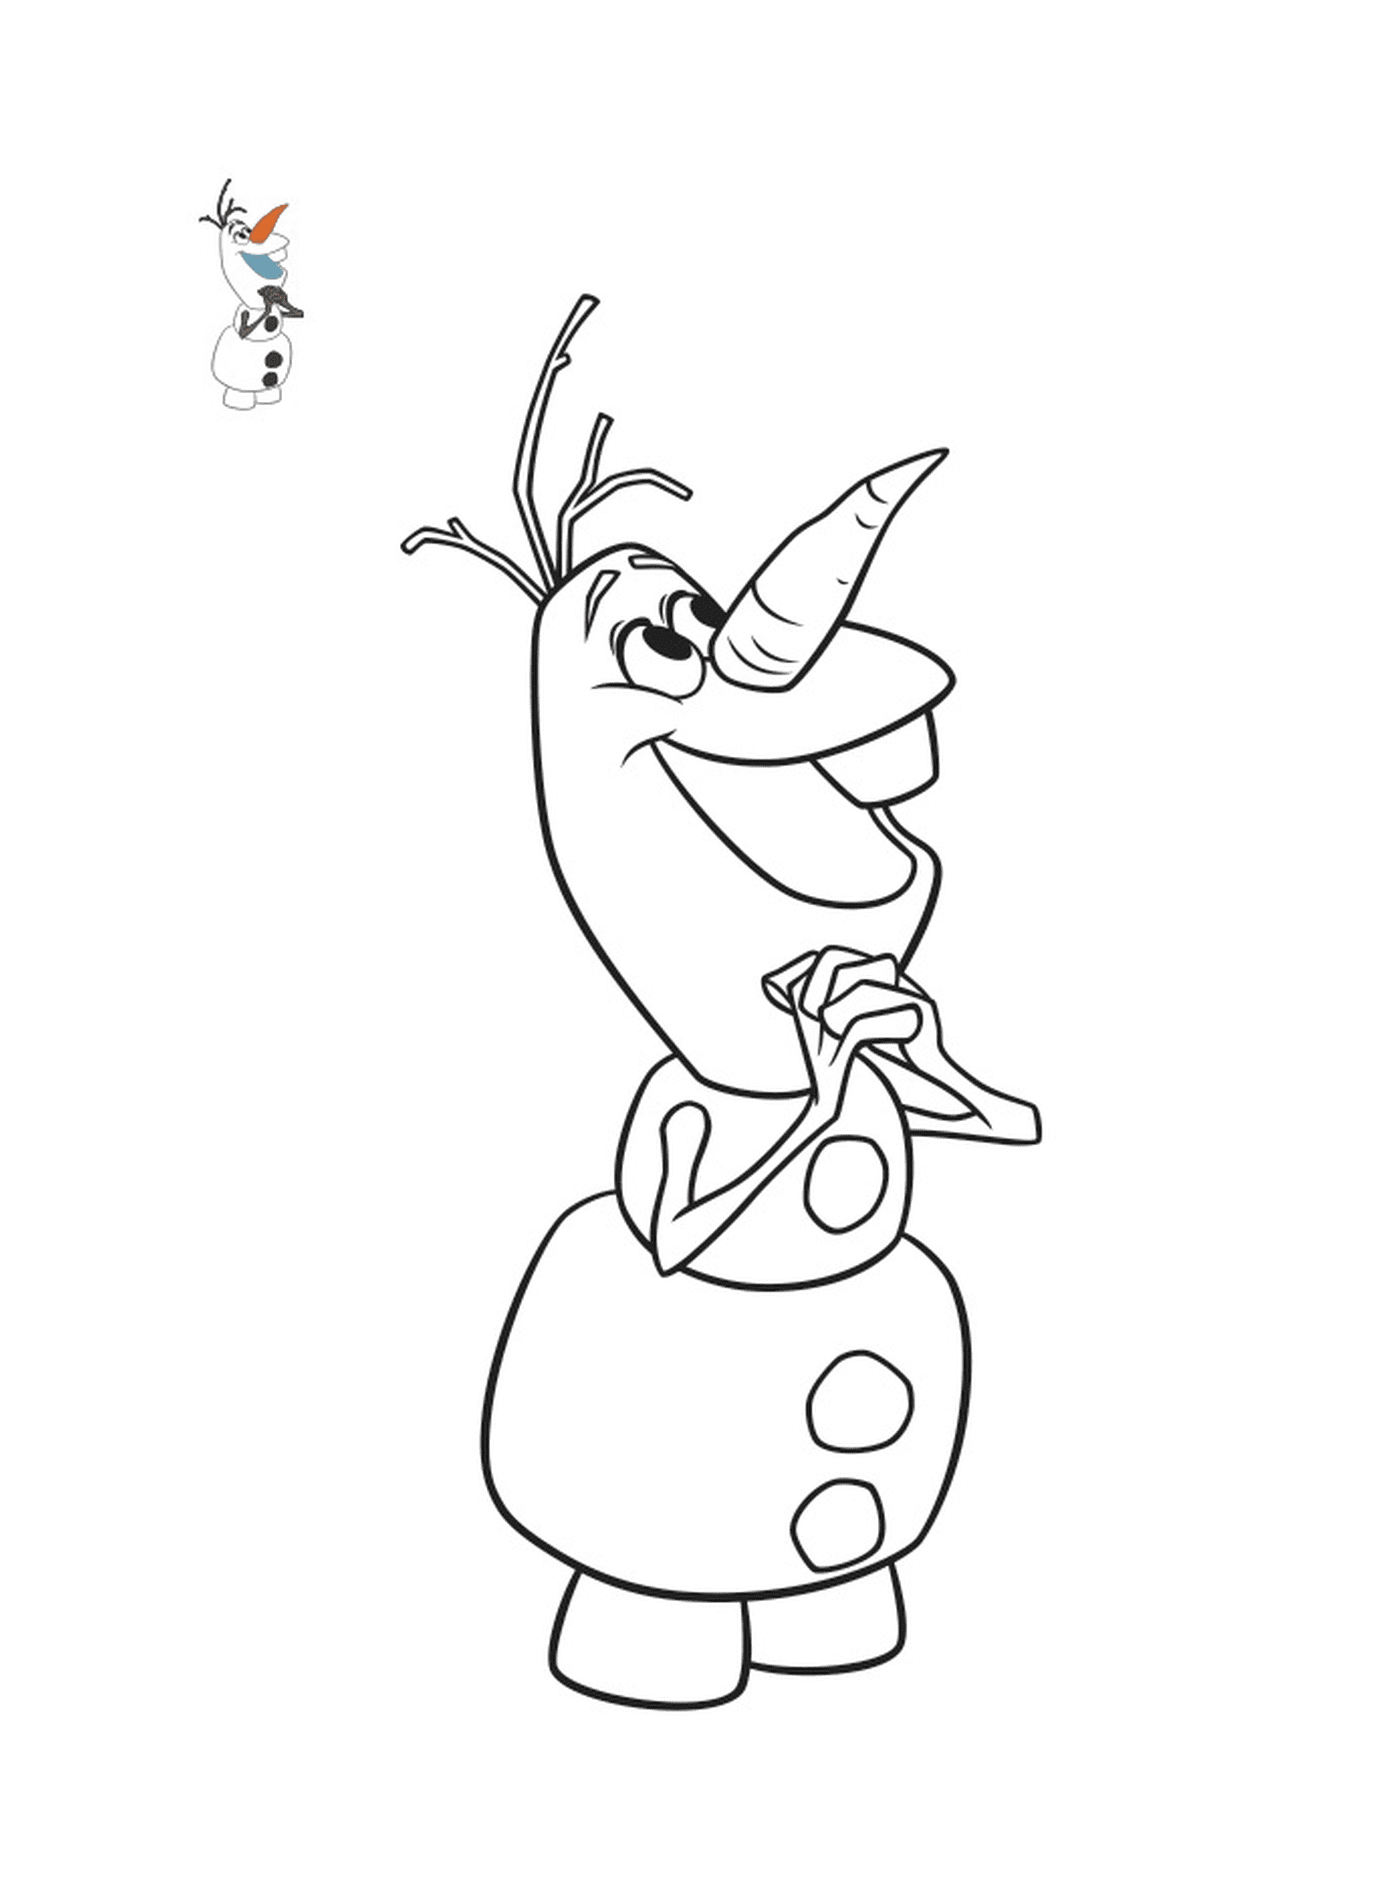  Olaf espera con ansias la Navidad 